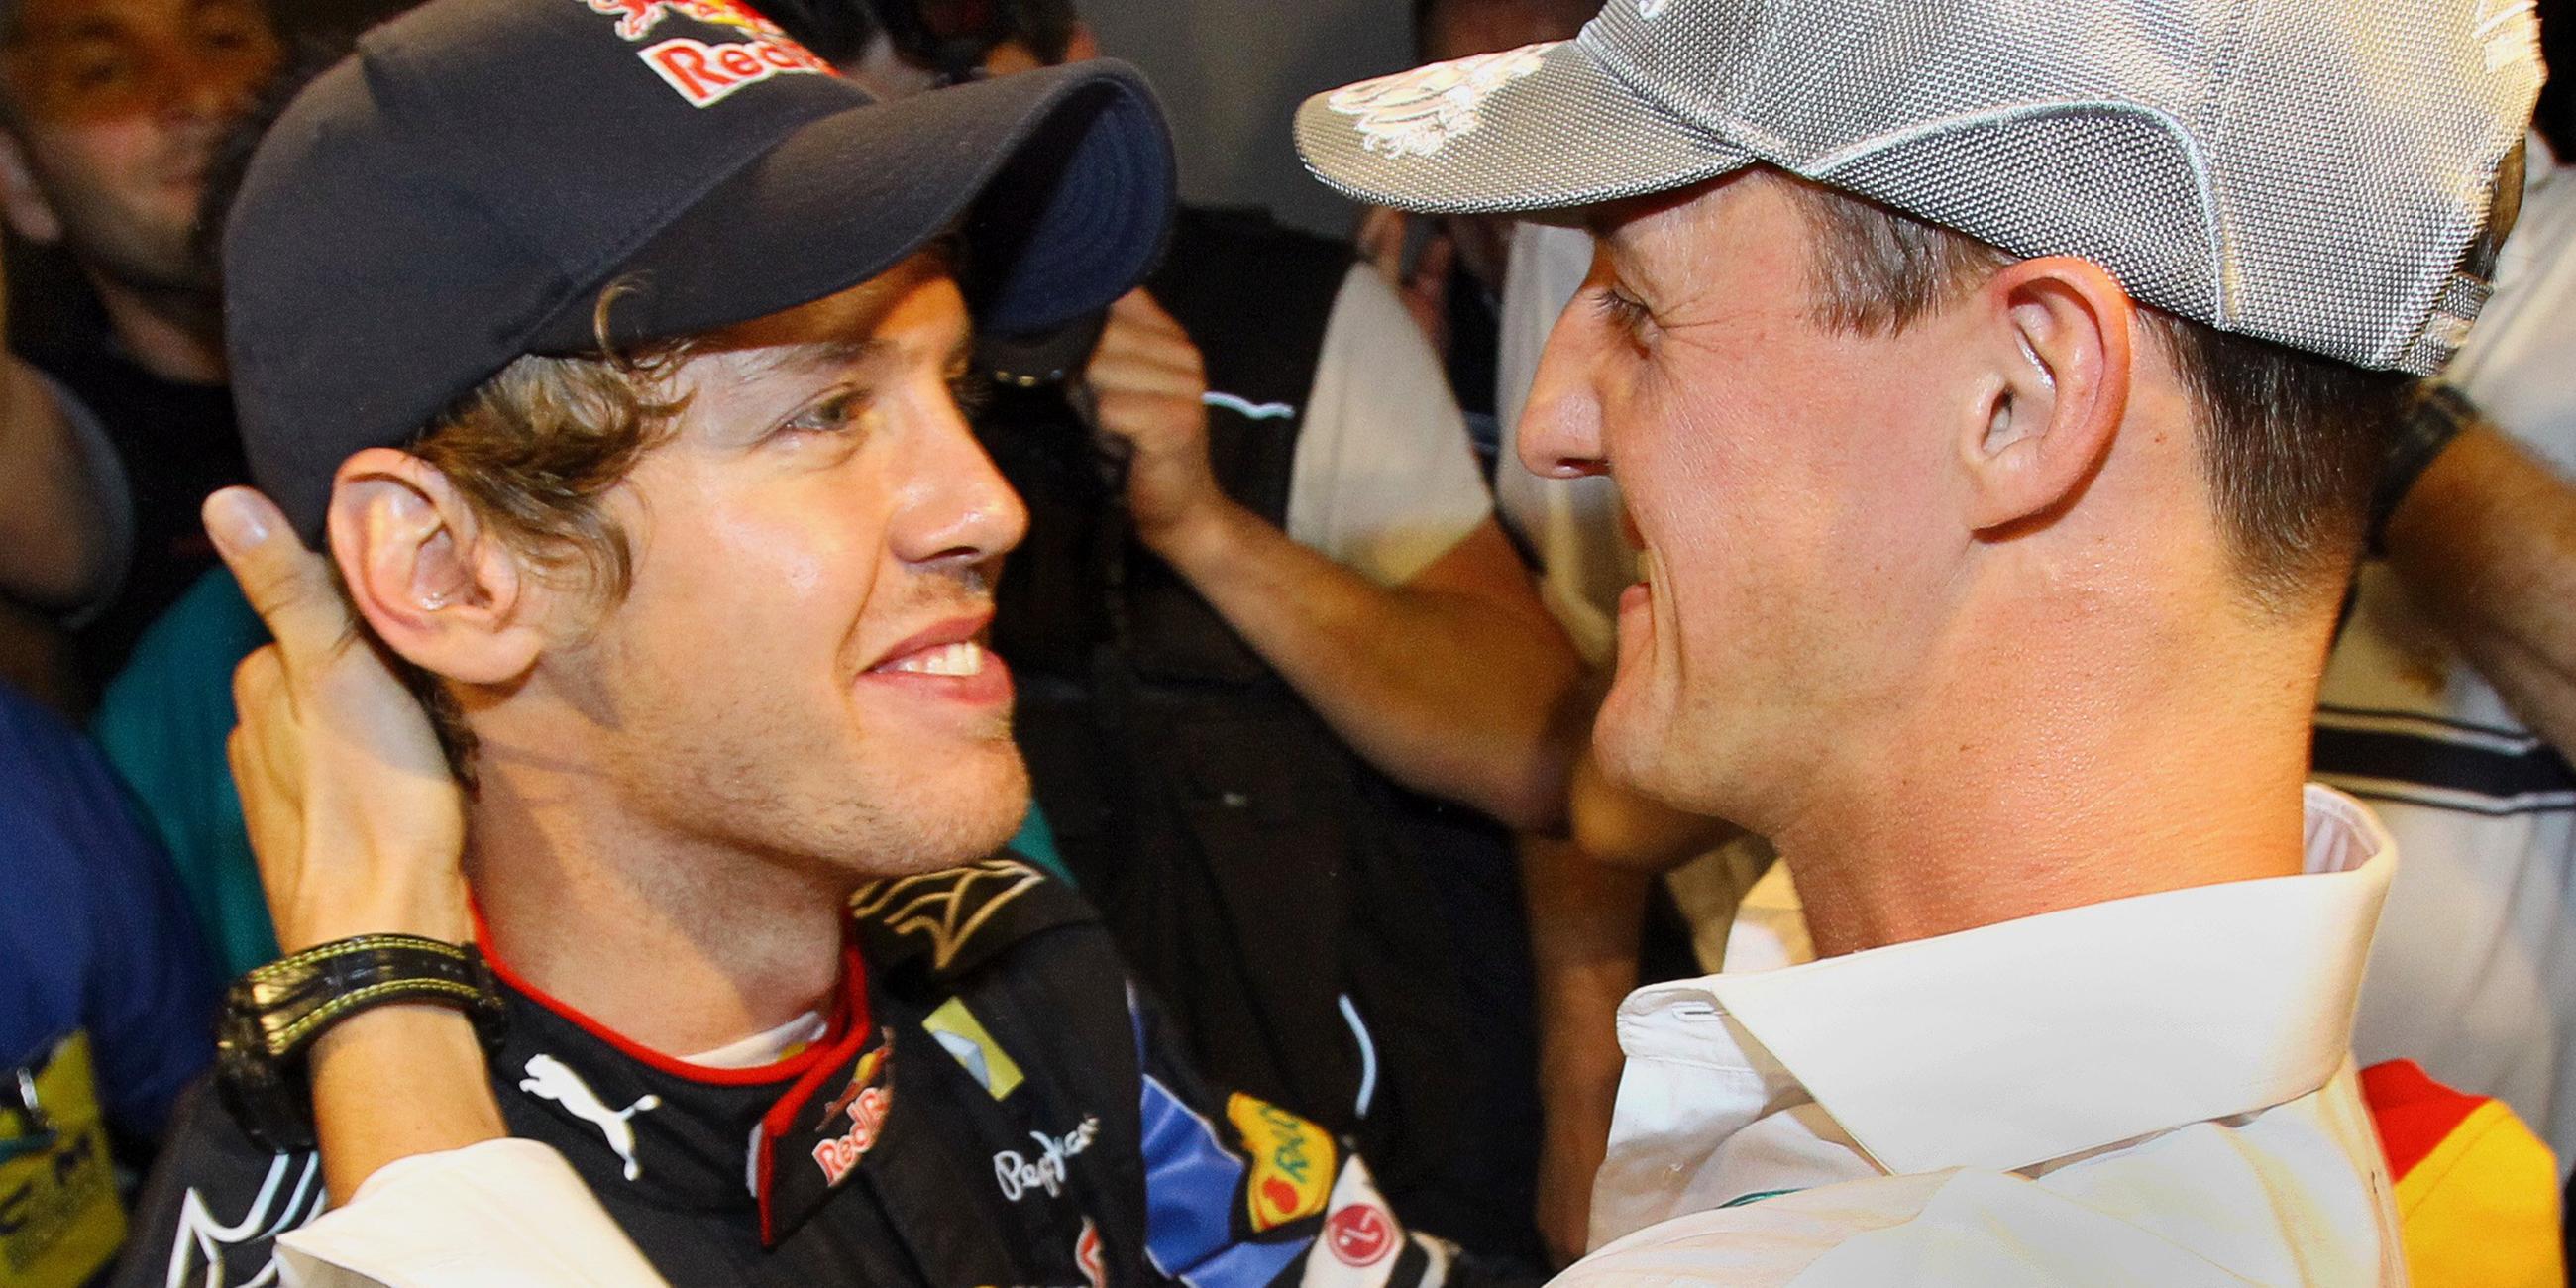 Michael Schumacher gratuliert Sebastian Vettel zum WM-Titel 2010. Die beiden verstehen sich gut...